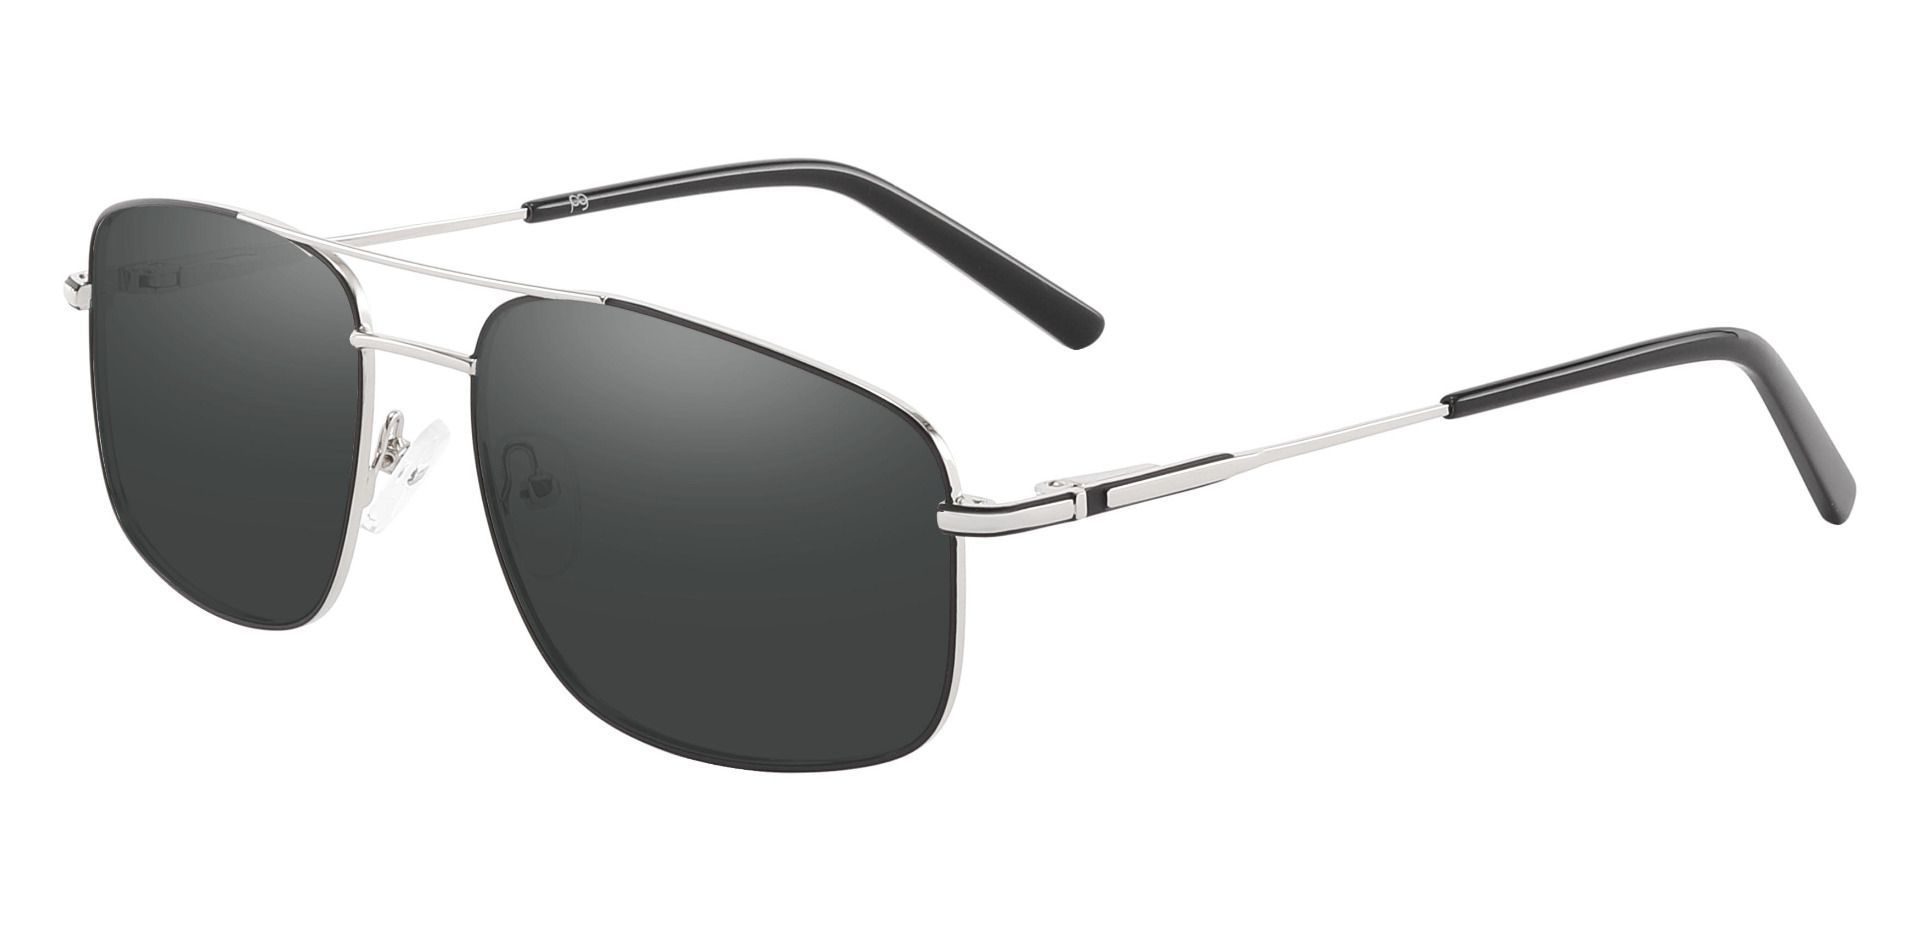 Turner Aviator Progressive Sunglasses - Silver Frame With Gray Lenses